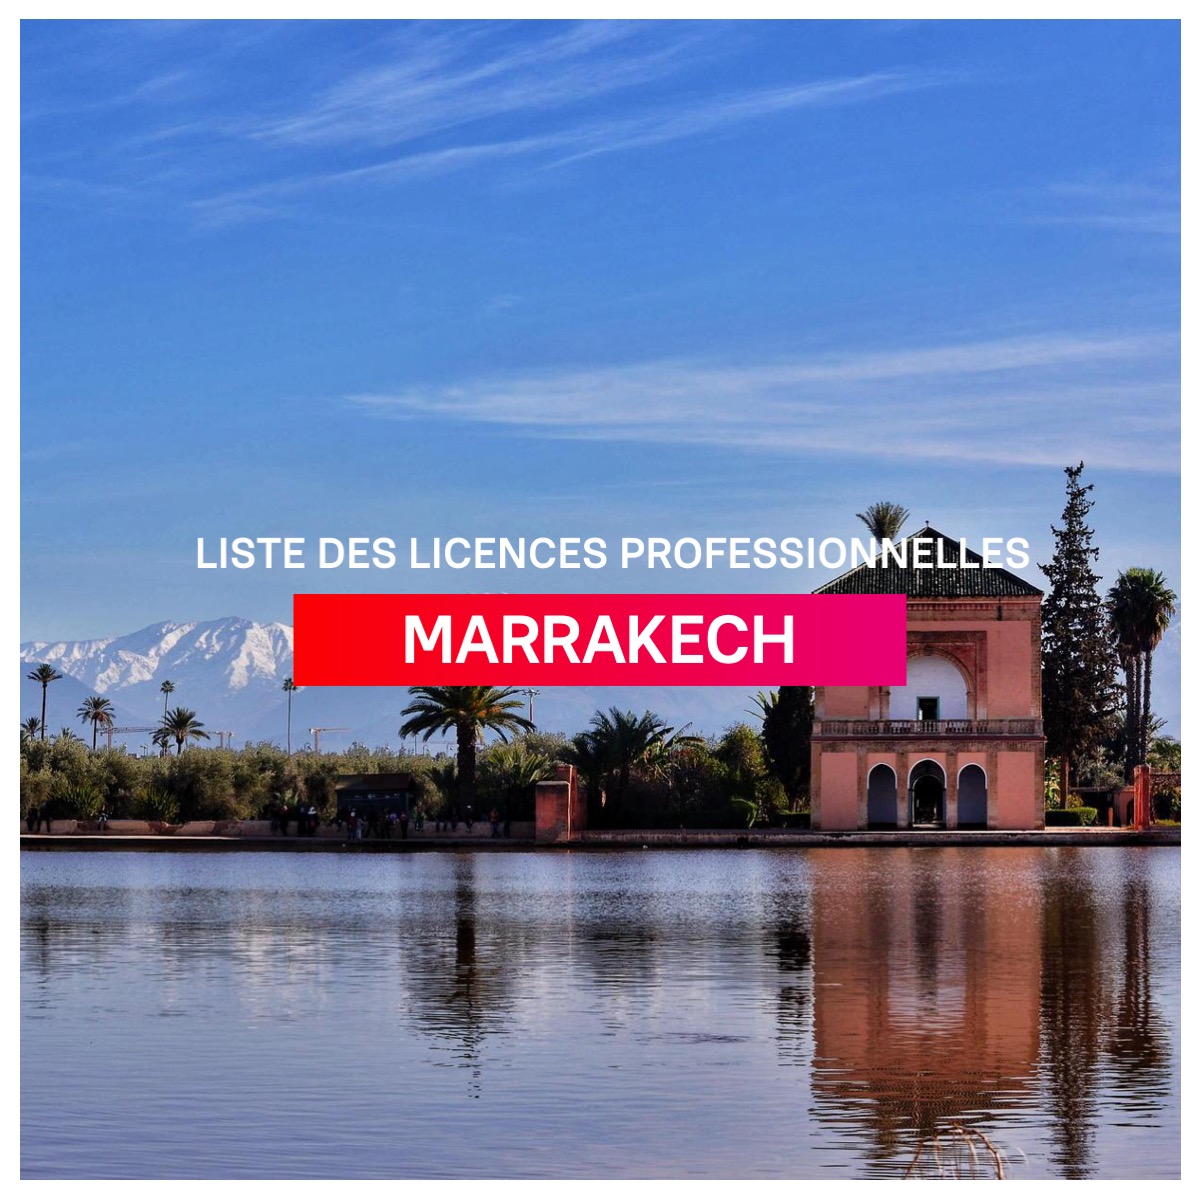 Listes des licences professionnelles a Marrakech l mba.ma